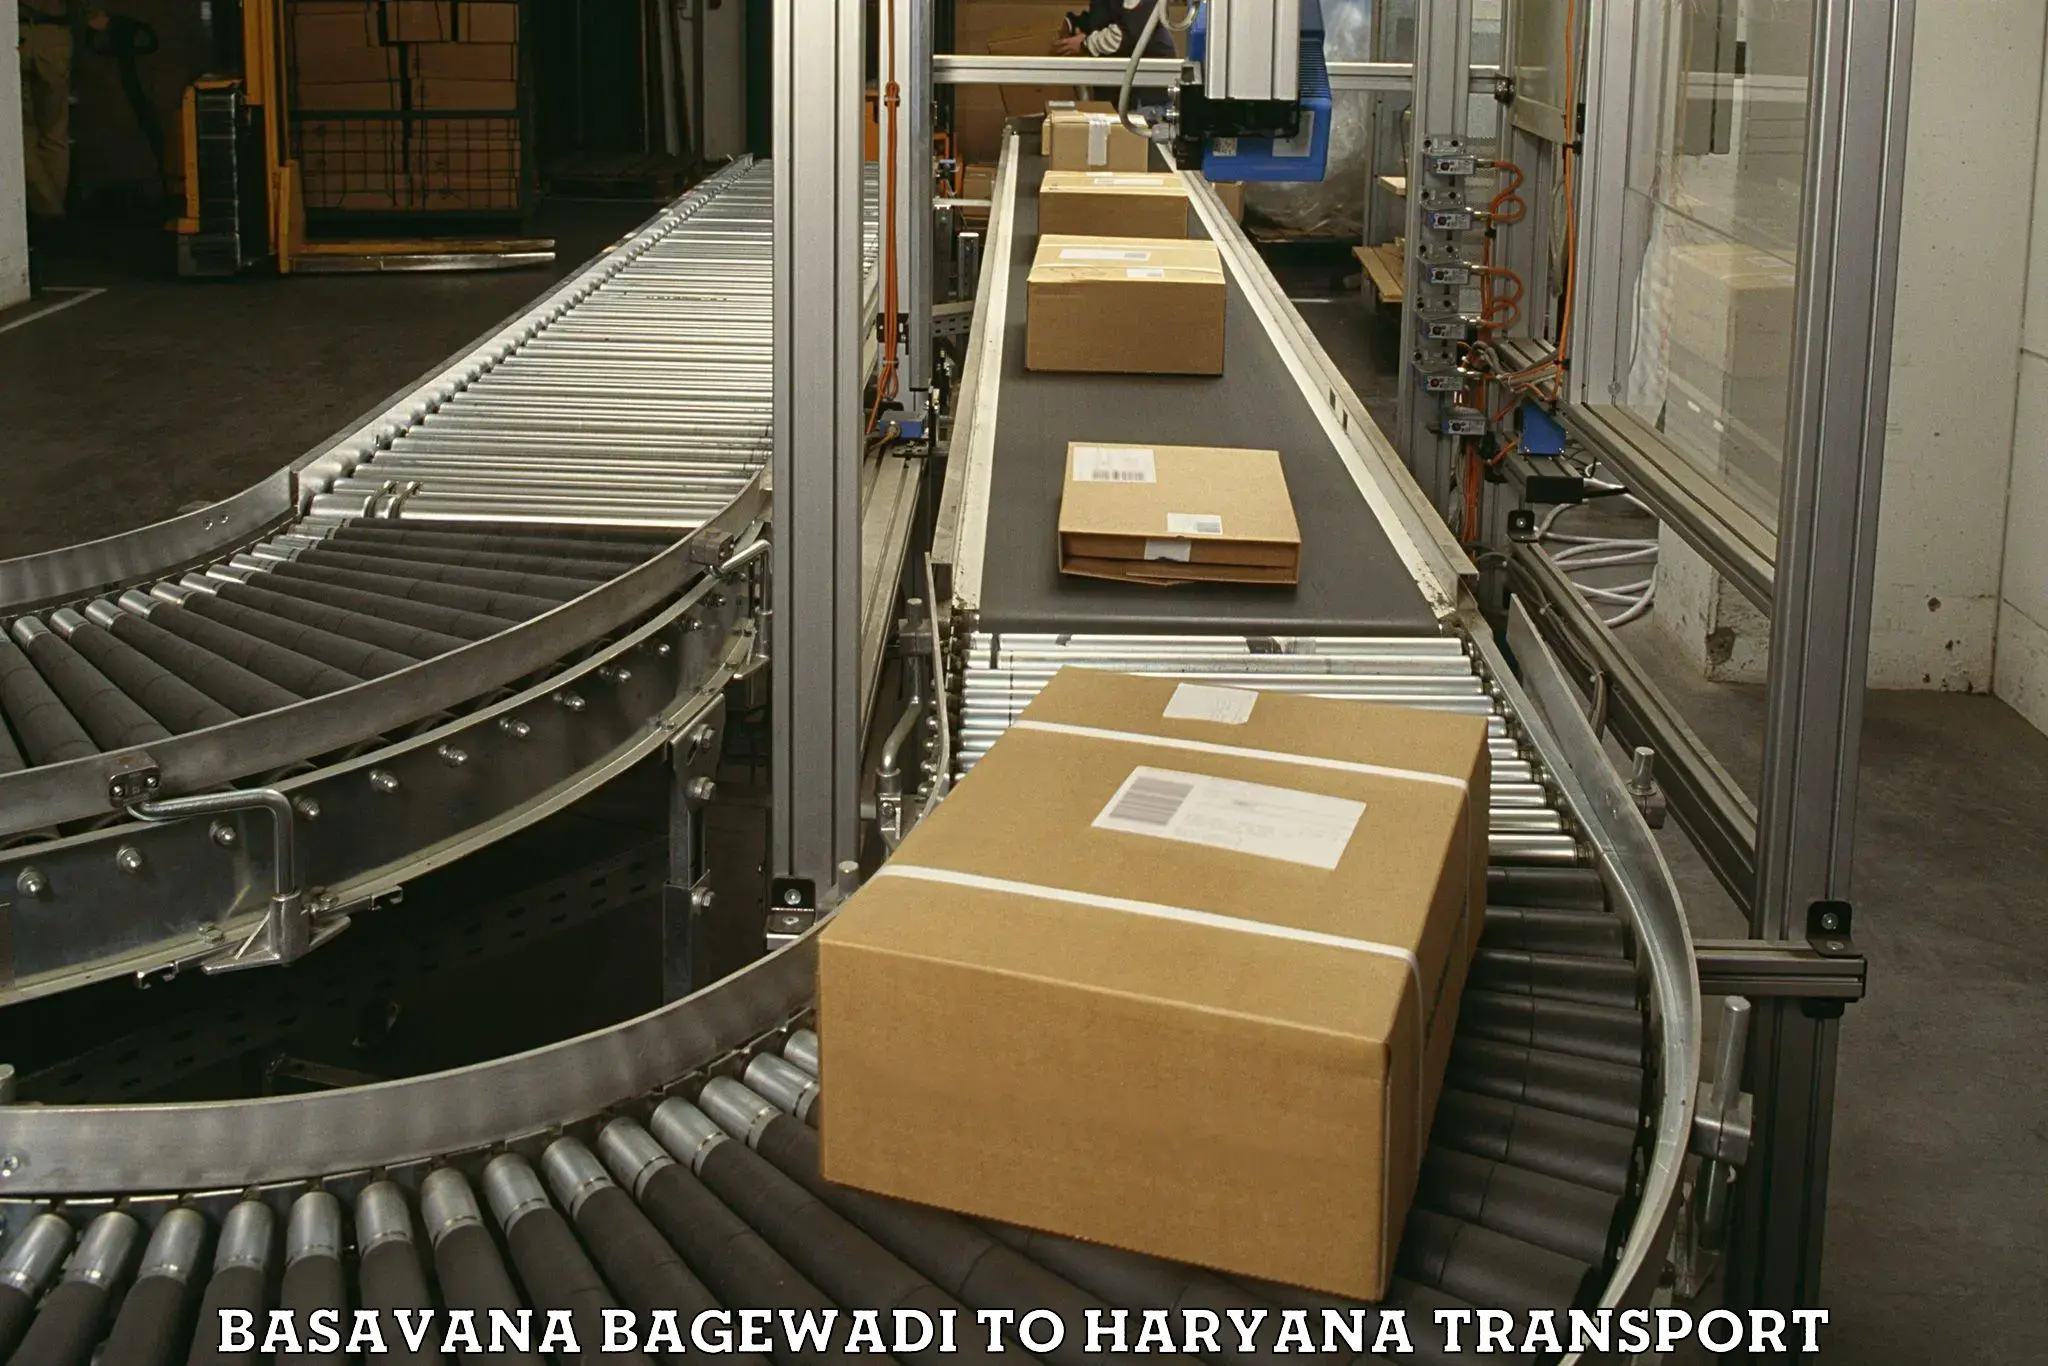 Goods delivery service Basavana Bagewadi to Chaudhary Charan Singh Haryana Agricultural University Hisar